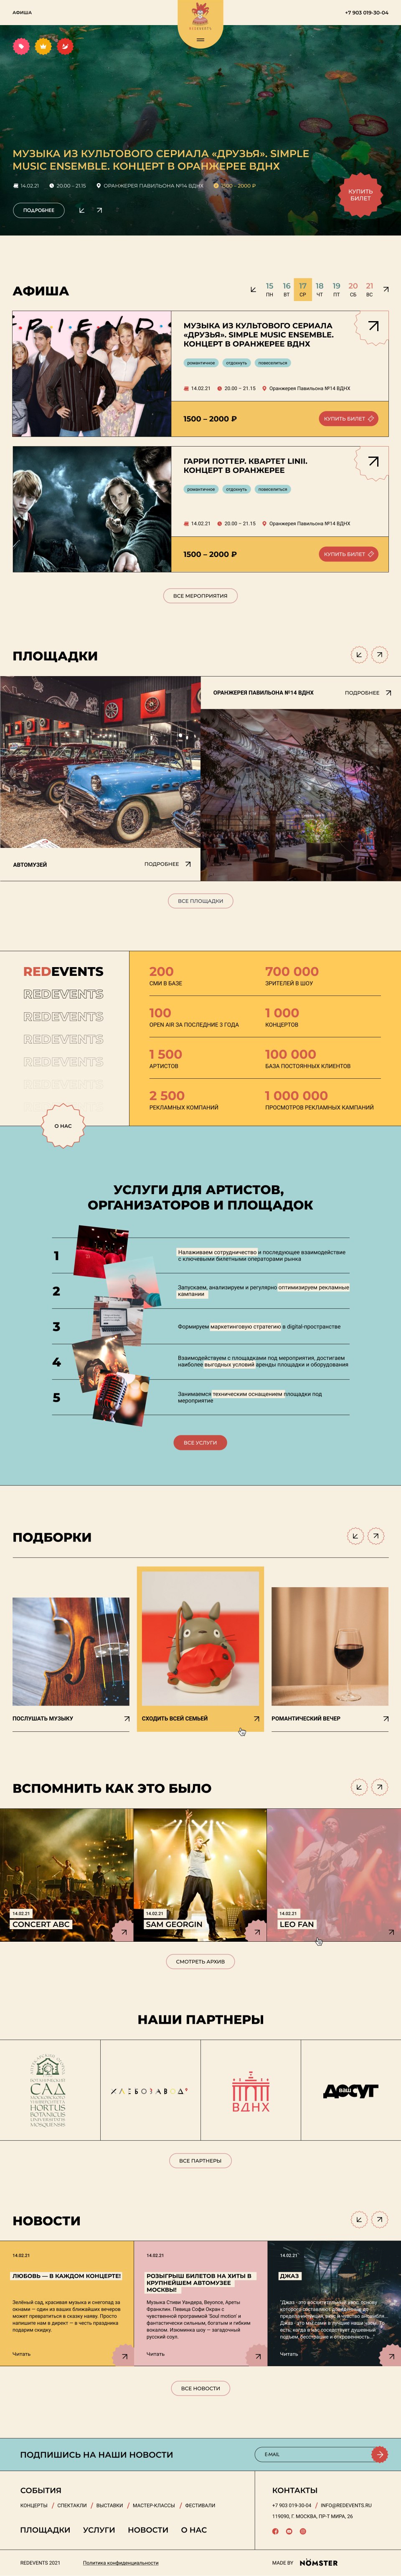 Дизайн макетов и разработка сайта для концертов №1